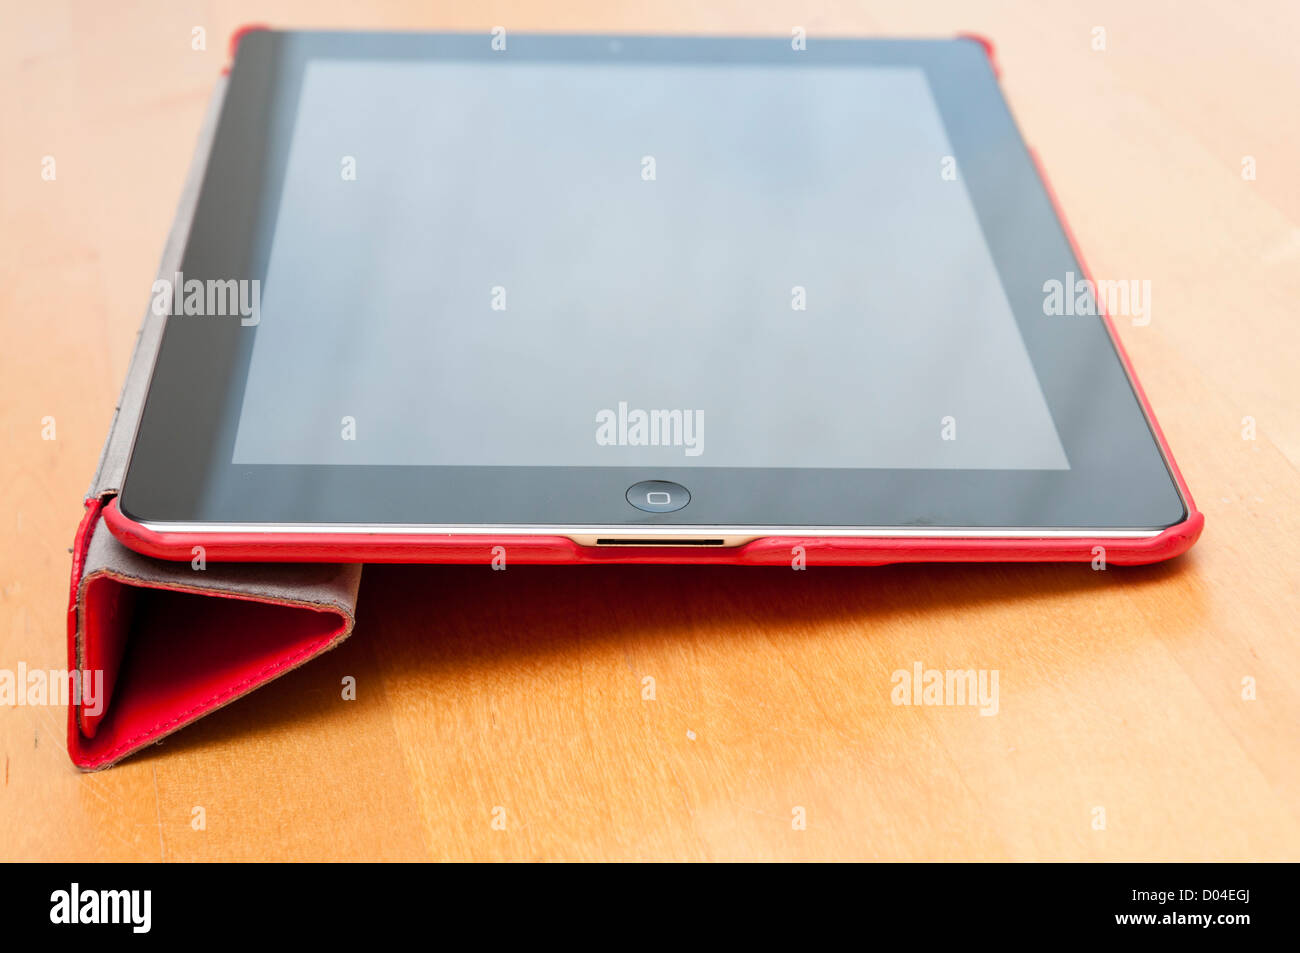 Dans l'ordinateur tablette Ipad housse rouge Banque D'Images